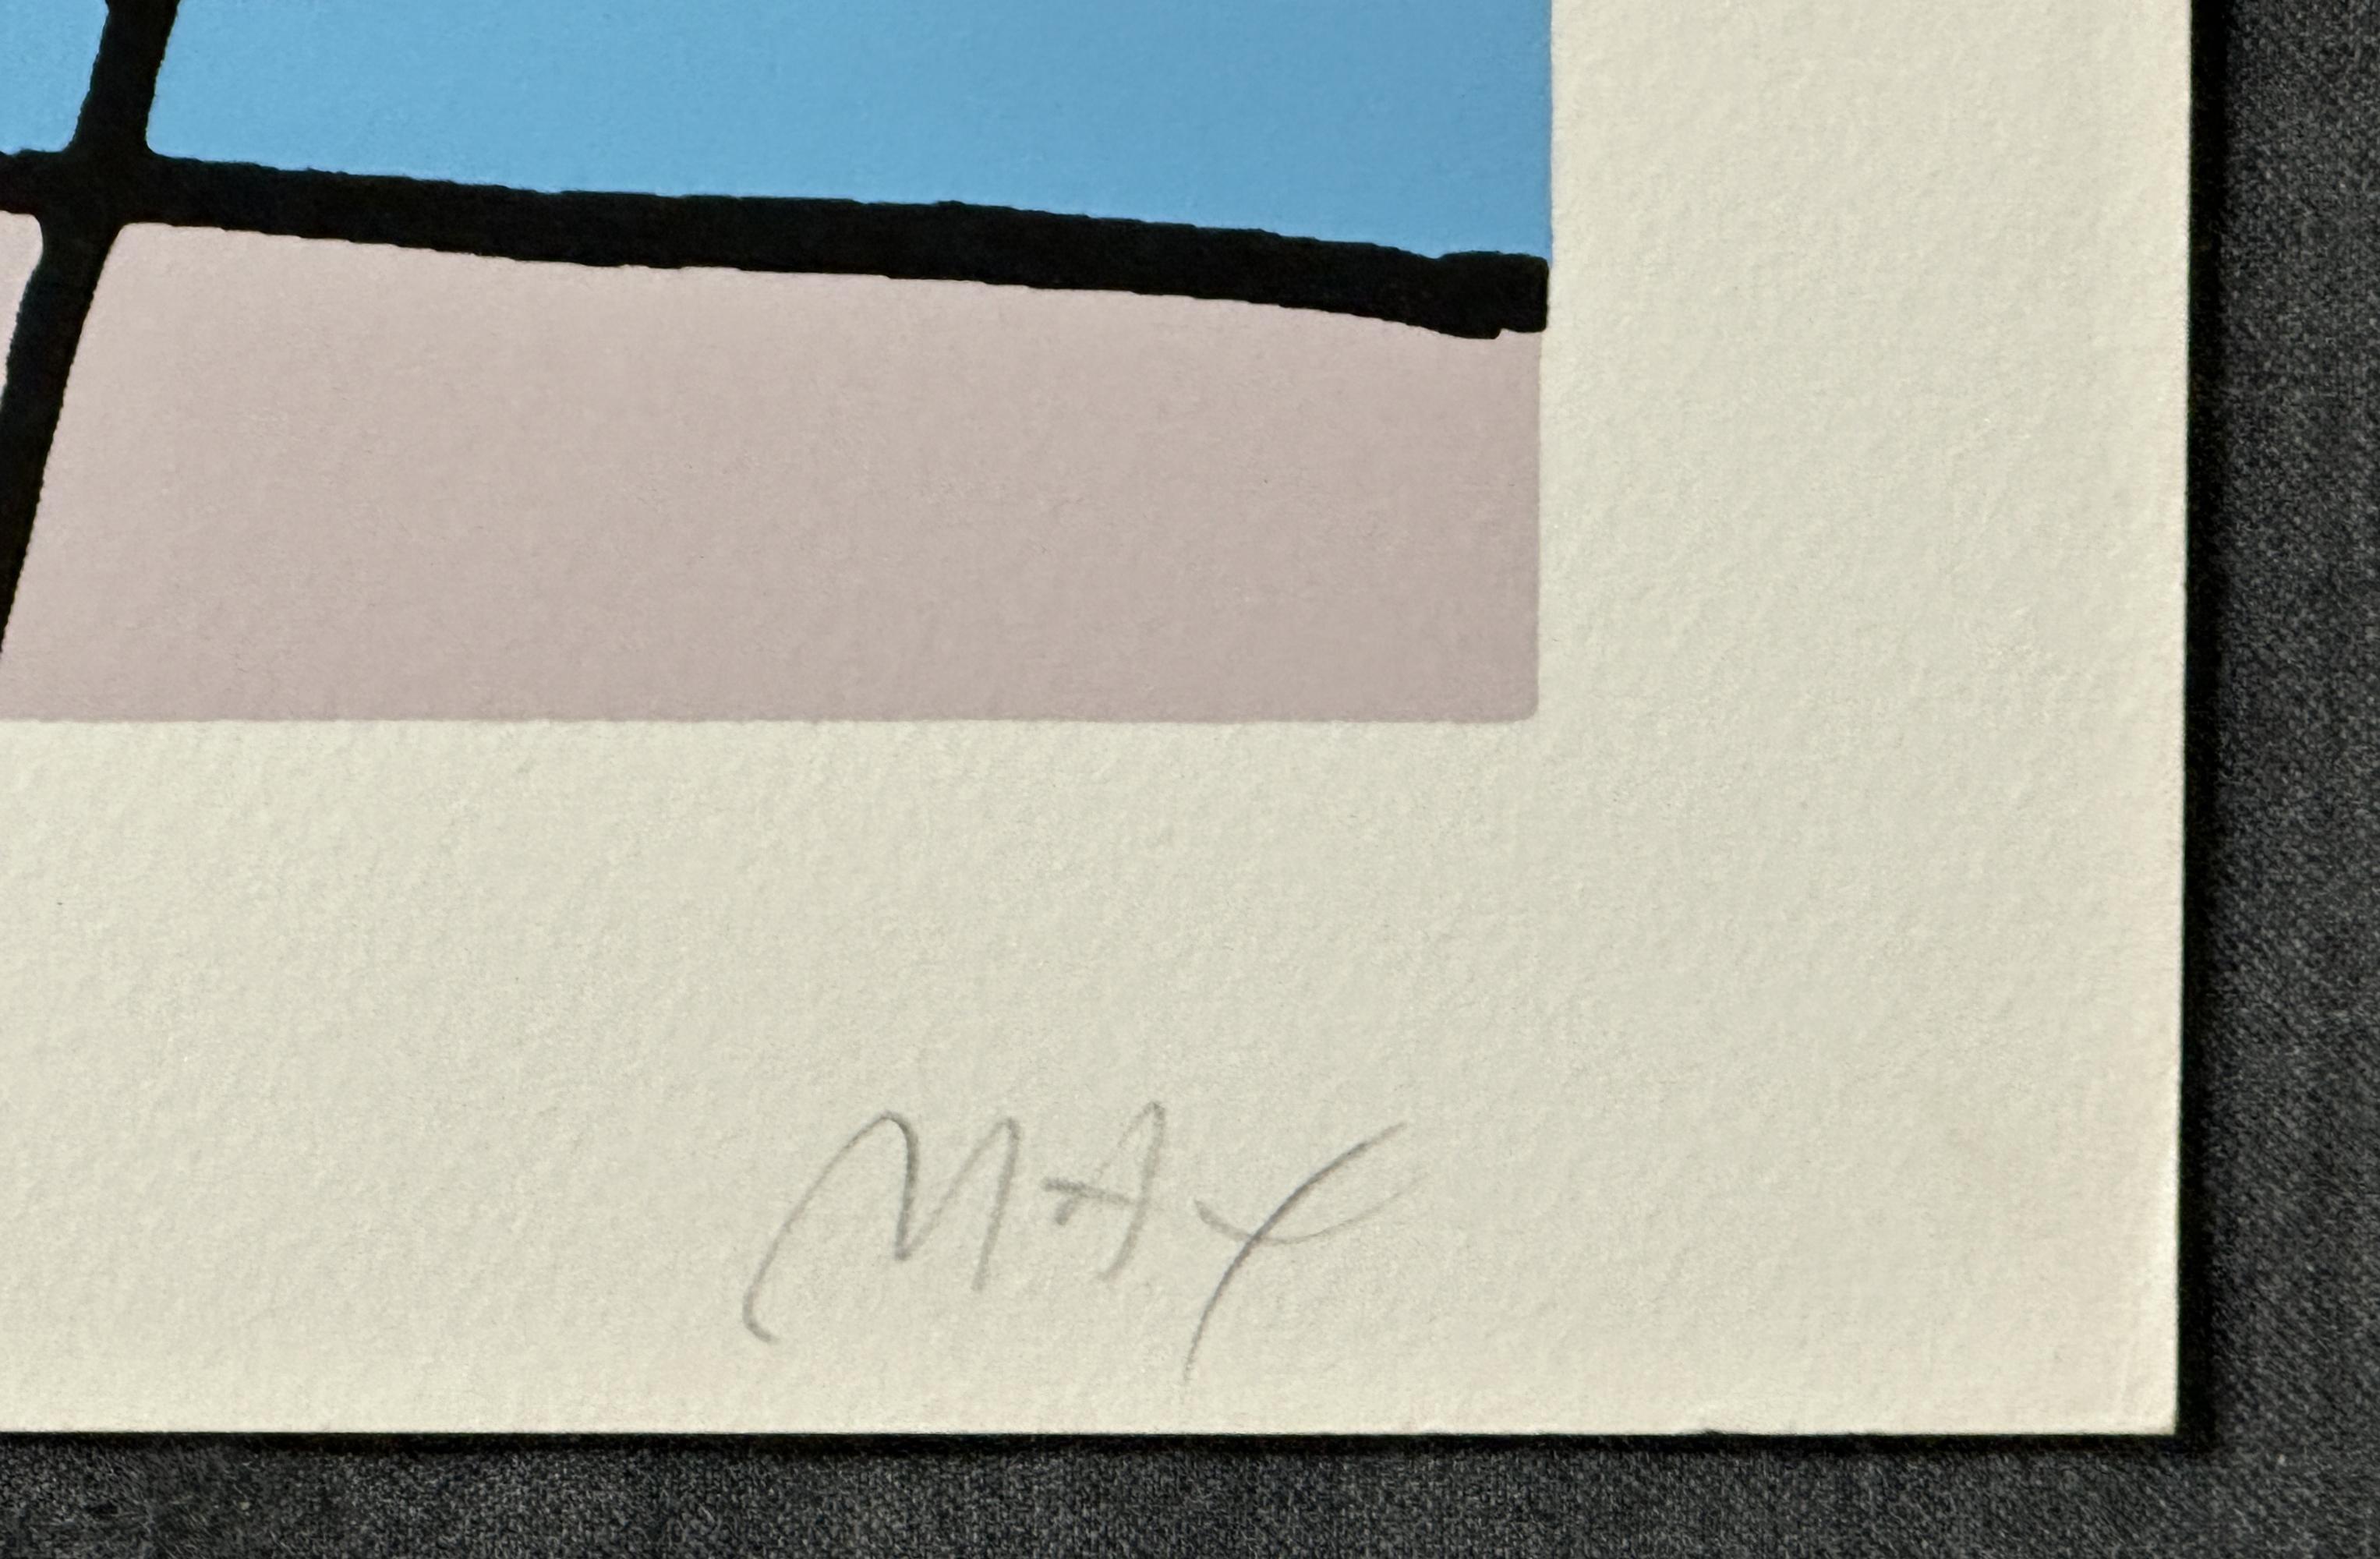 Peter Max
Nachtblumen
Siebdruck
Mit Bleistift signiert und mit AP (Artist Proof) gekennzeichnet

